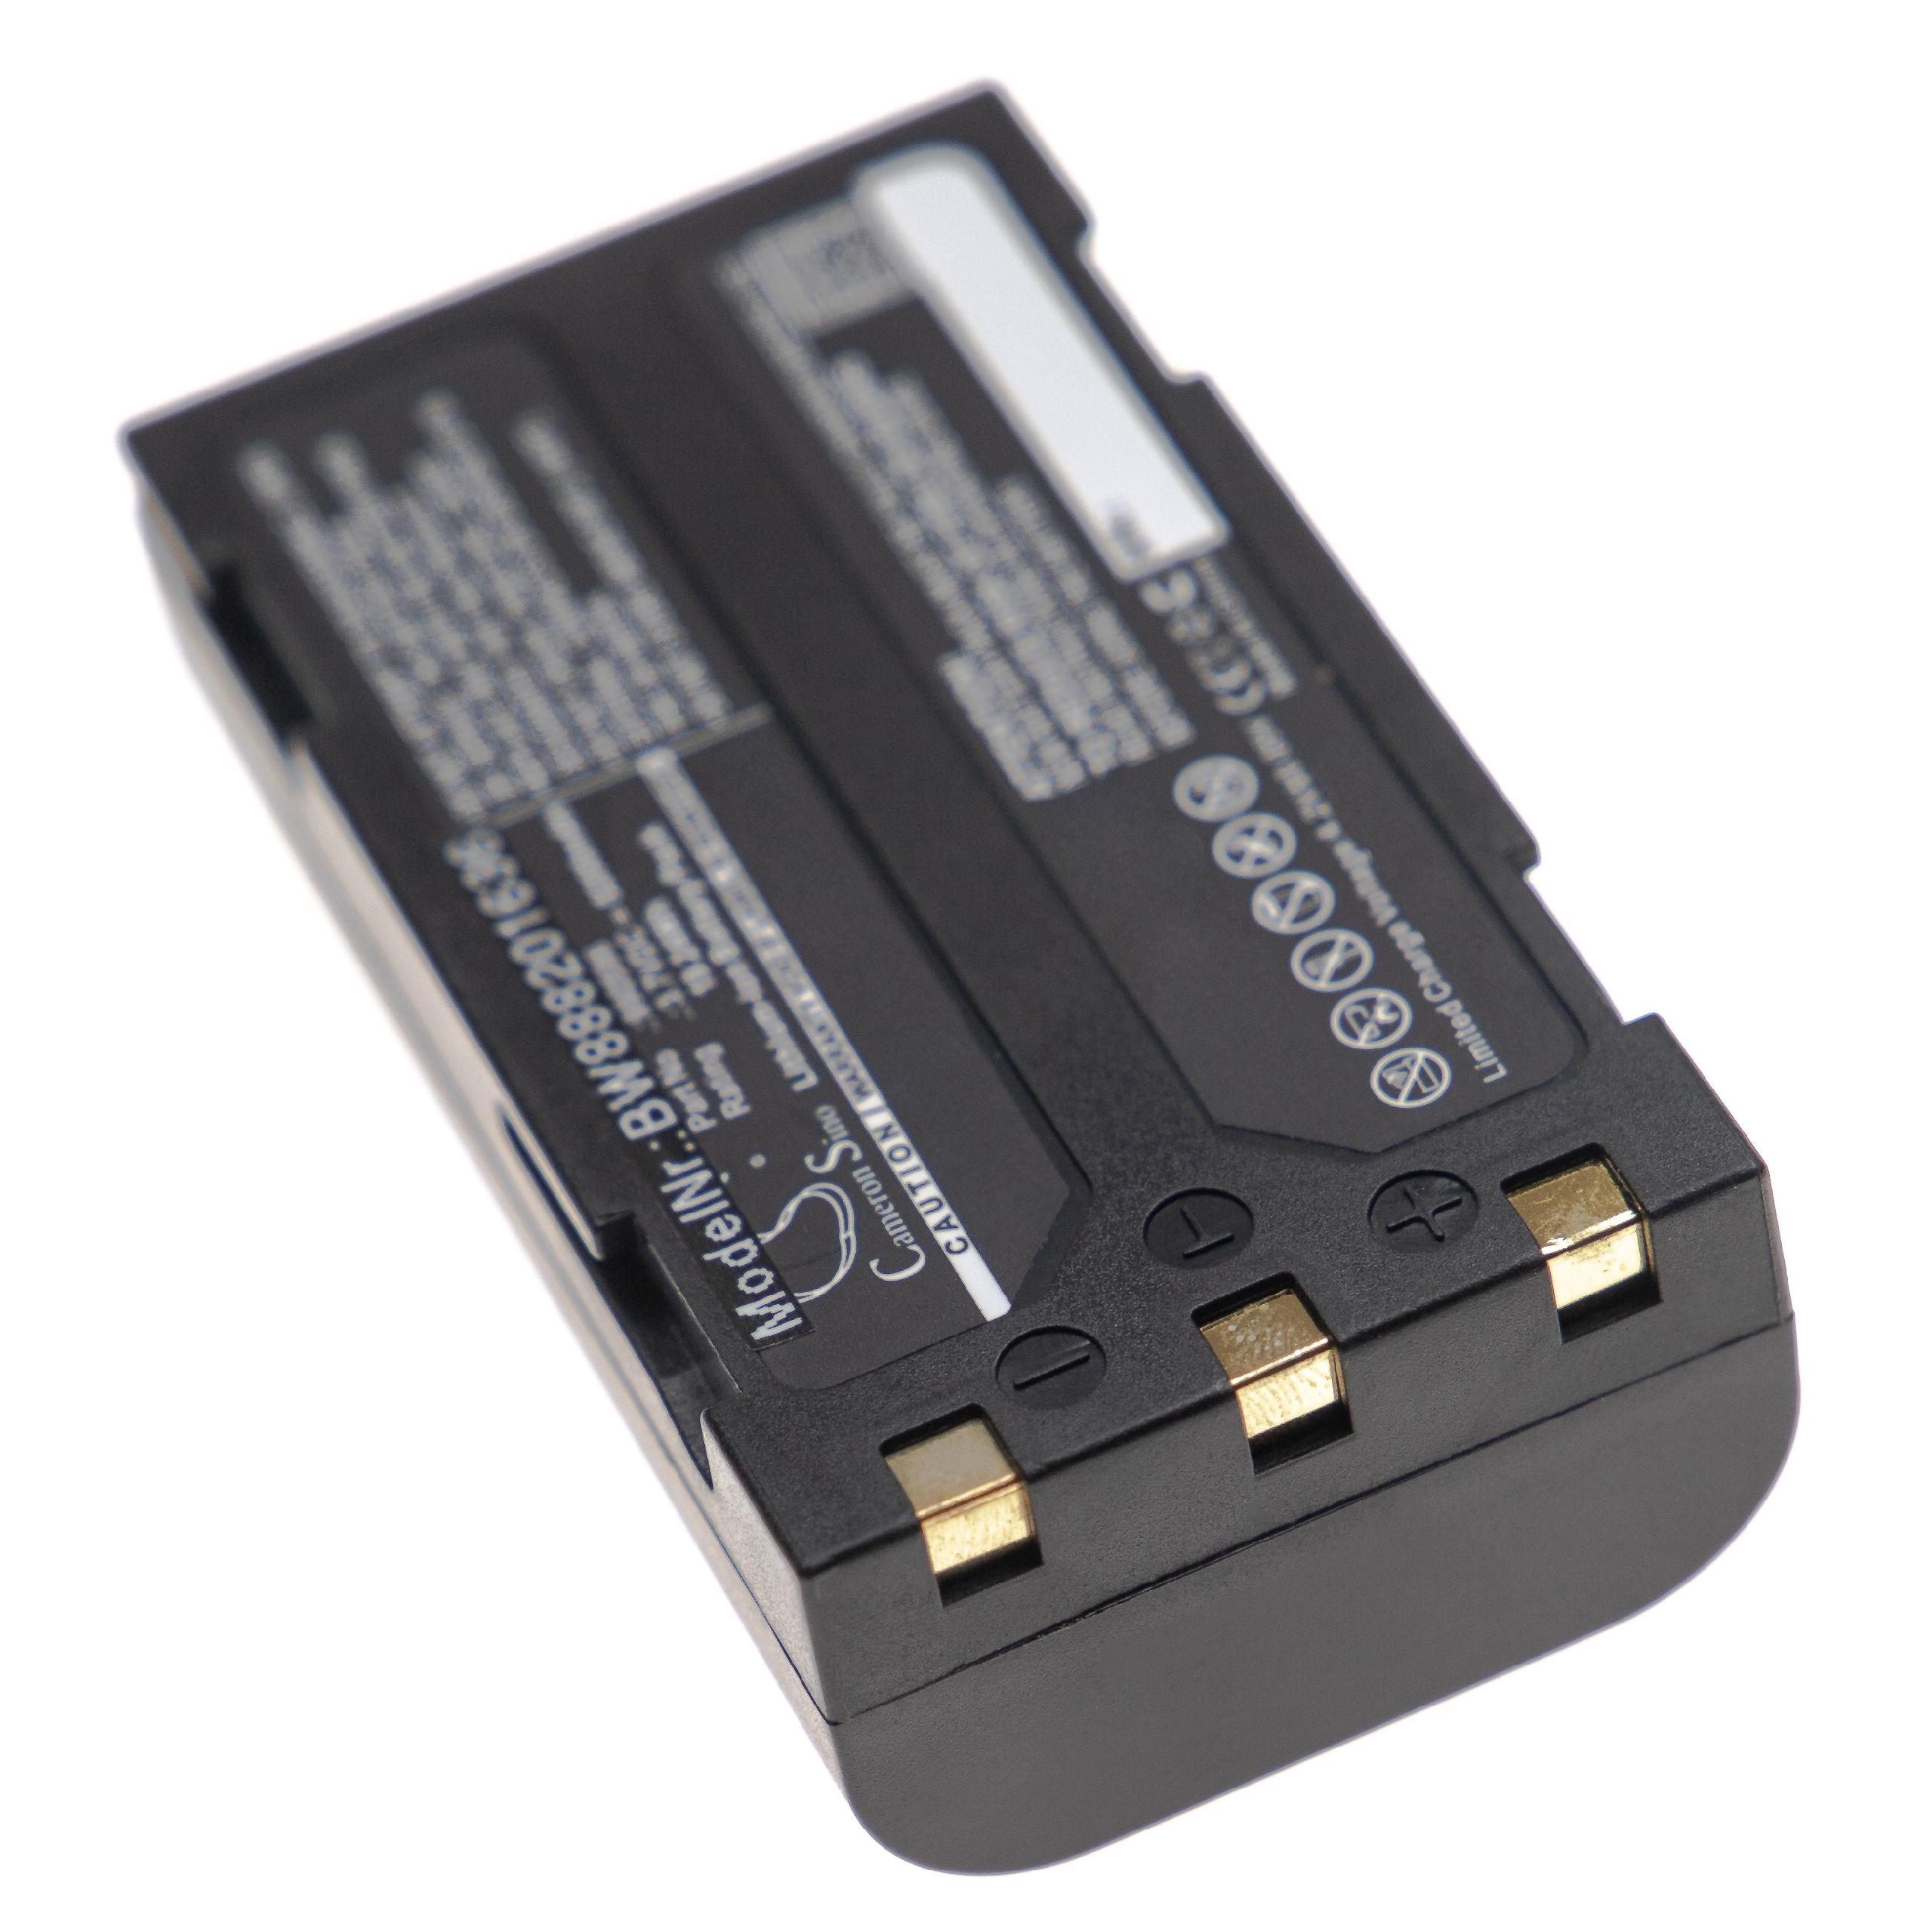 Batterie remplace Ridgid 990596, 990514 pour outil de mesure - 5200mAh 3,7V Li-ion